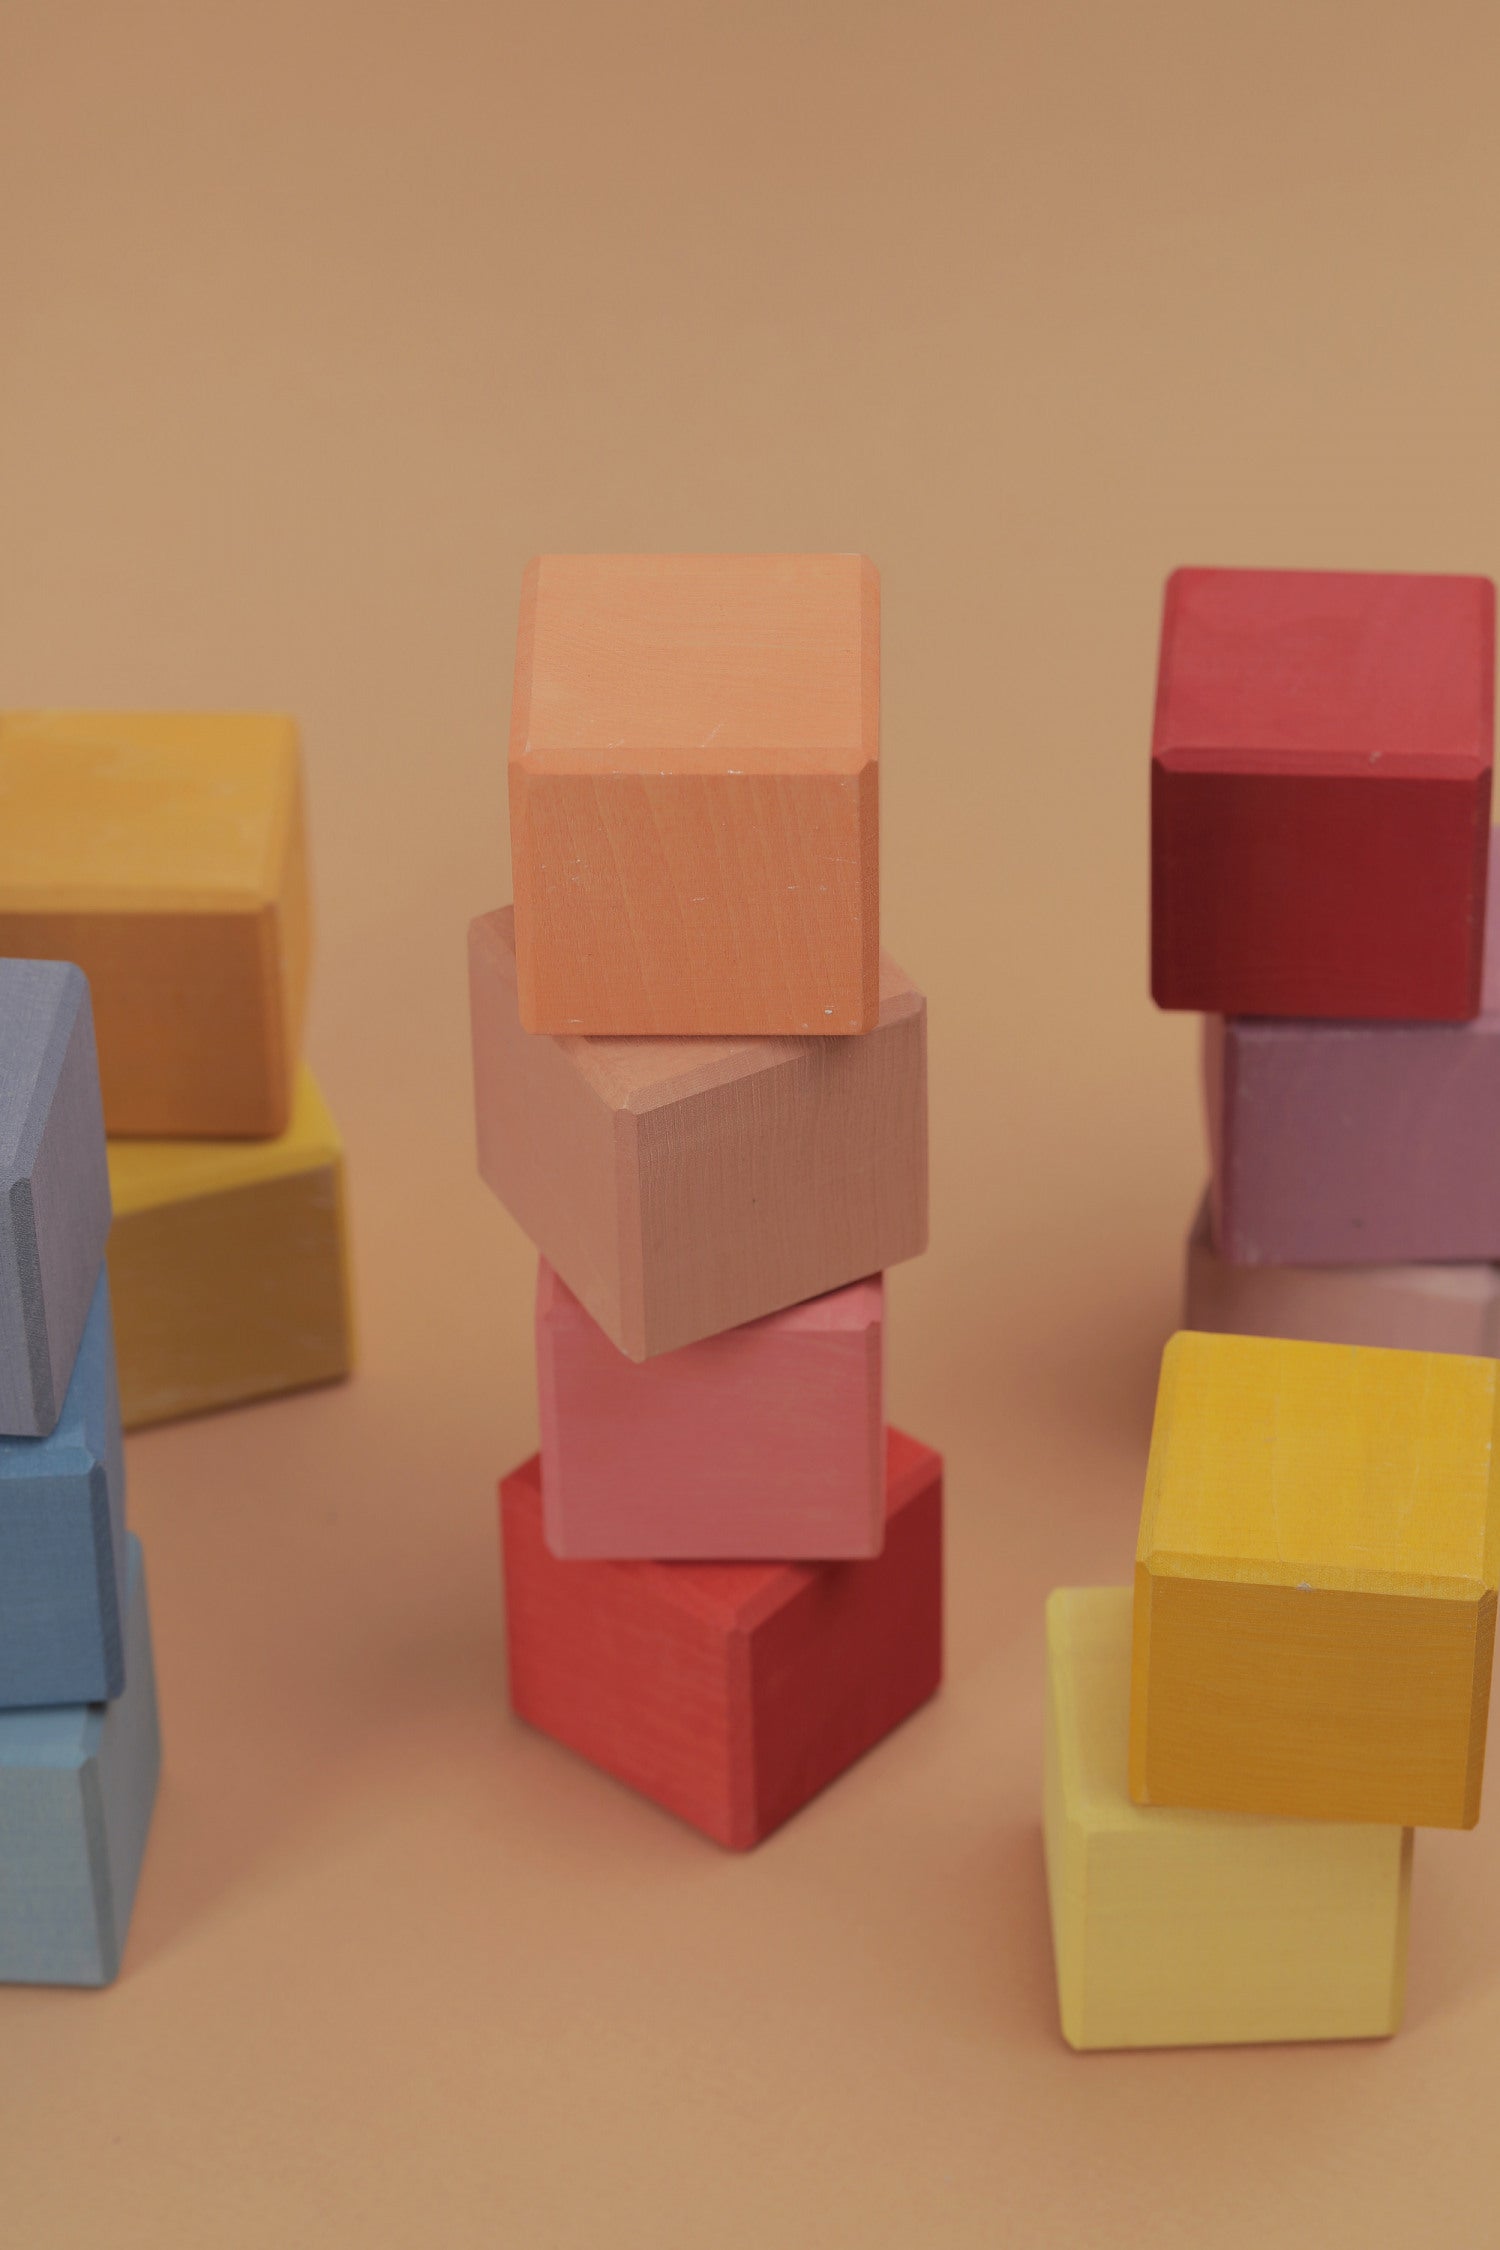 Rainbow Cubes Set, 20 Cubes